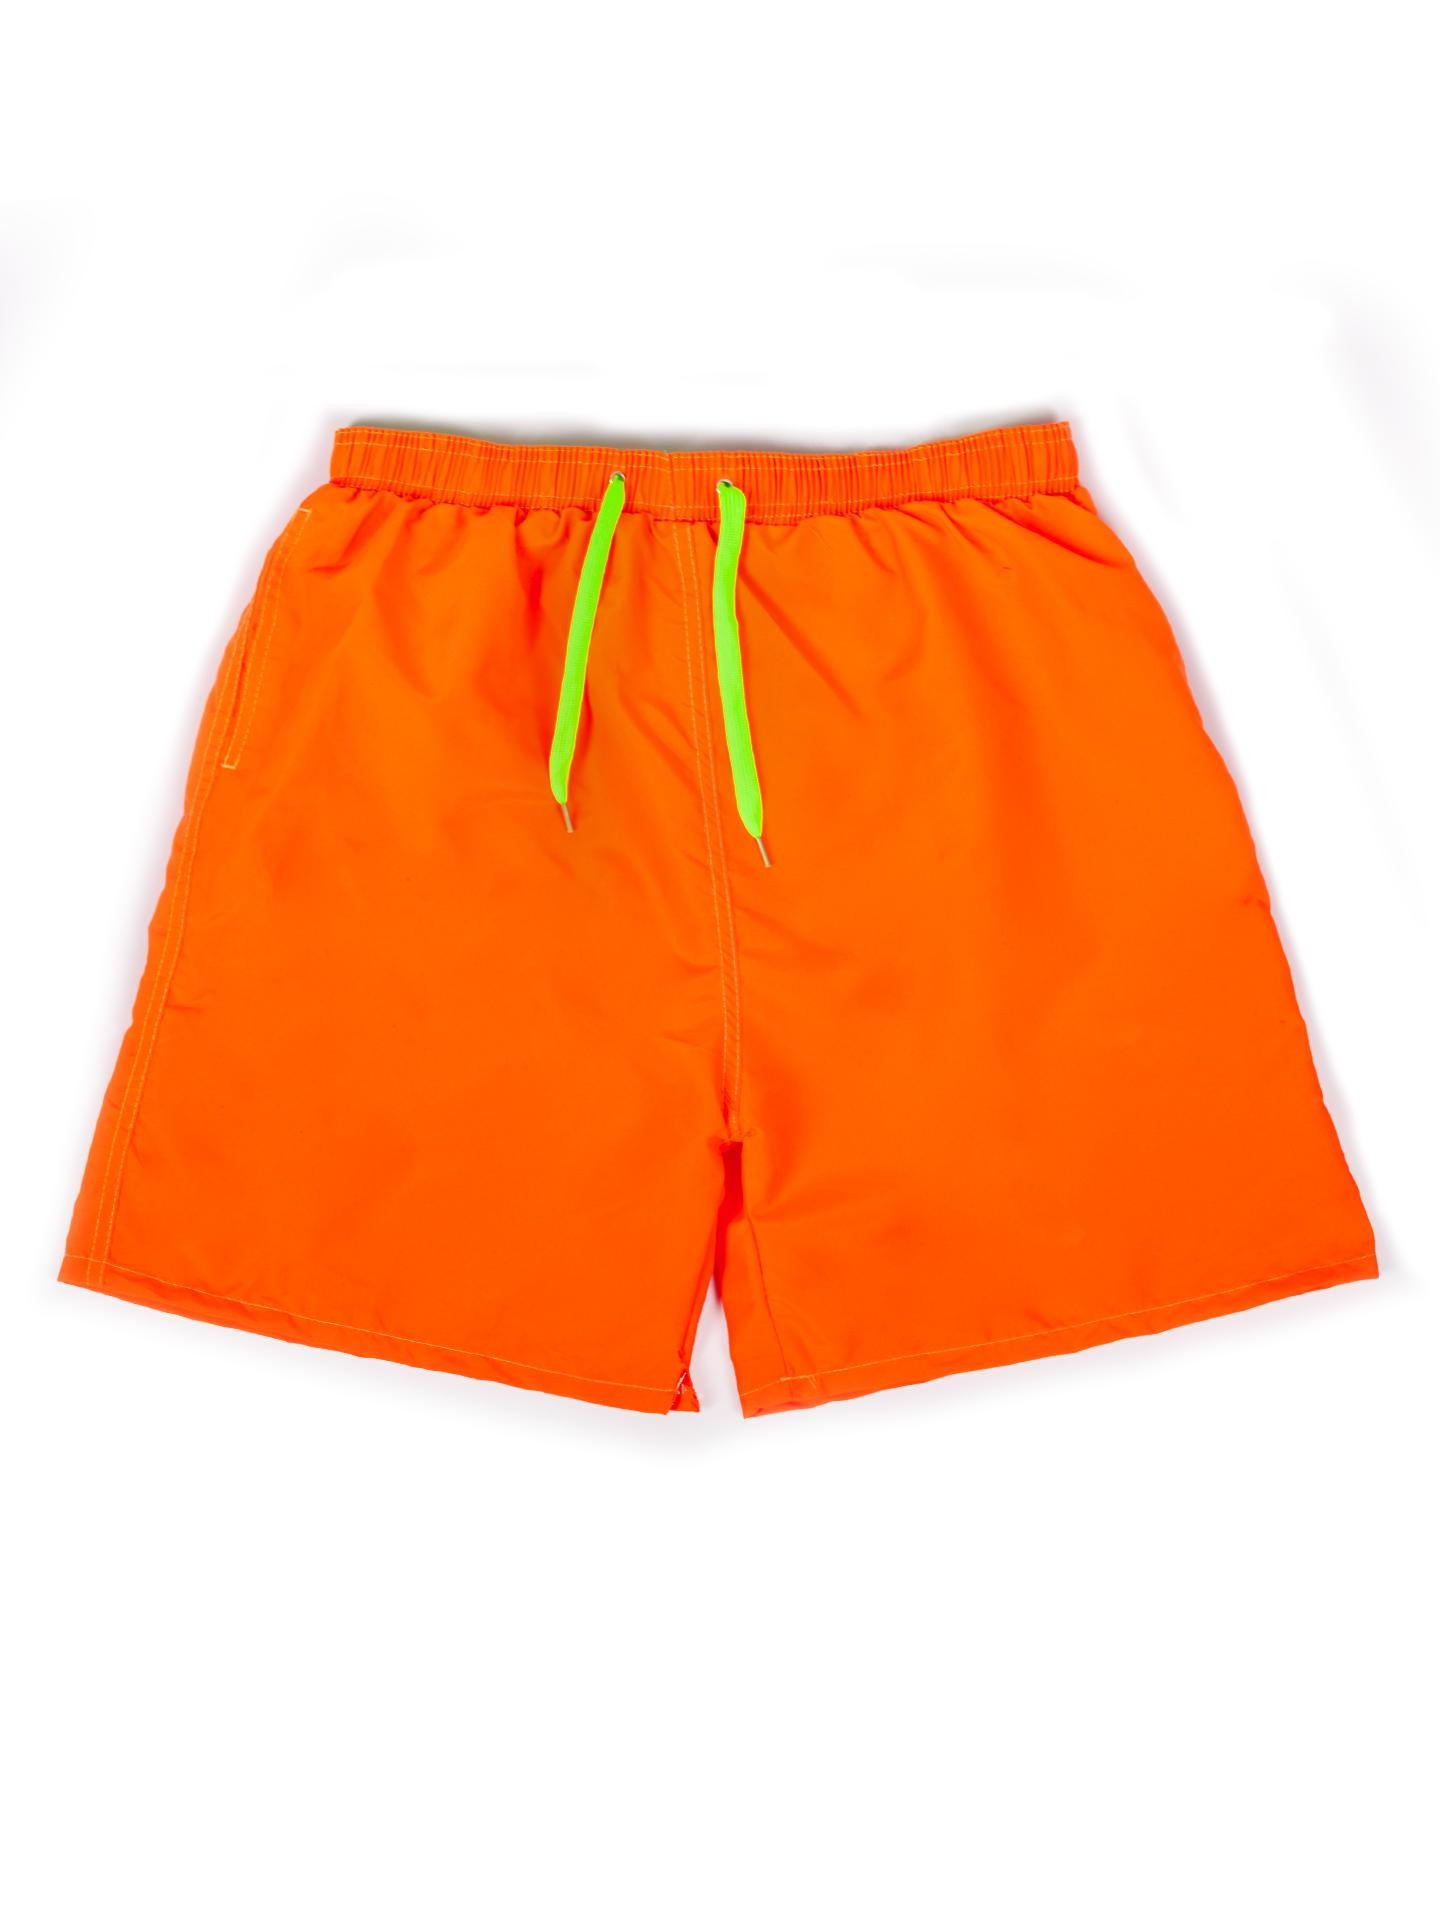 Yoclub Men's Beach Shorts LKS-0037F-A100 Orange M